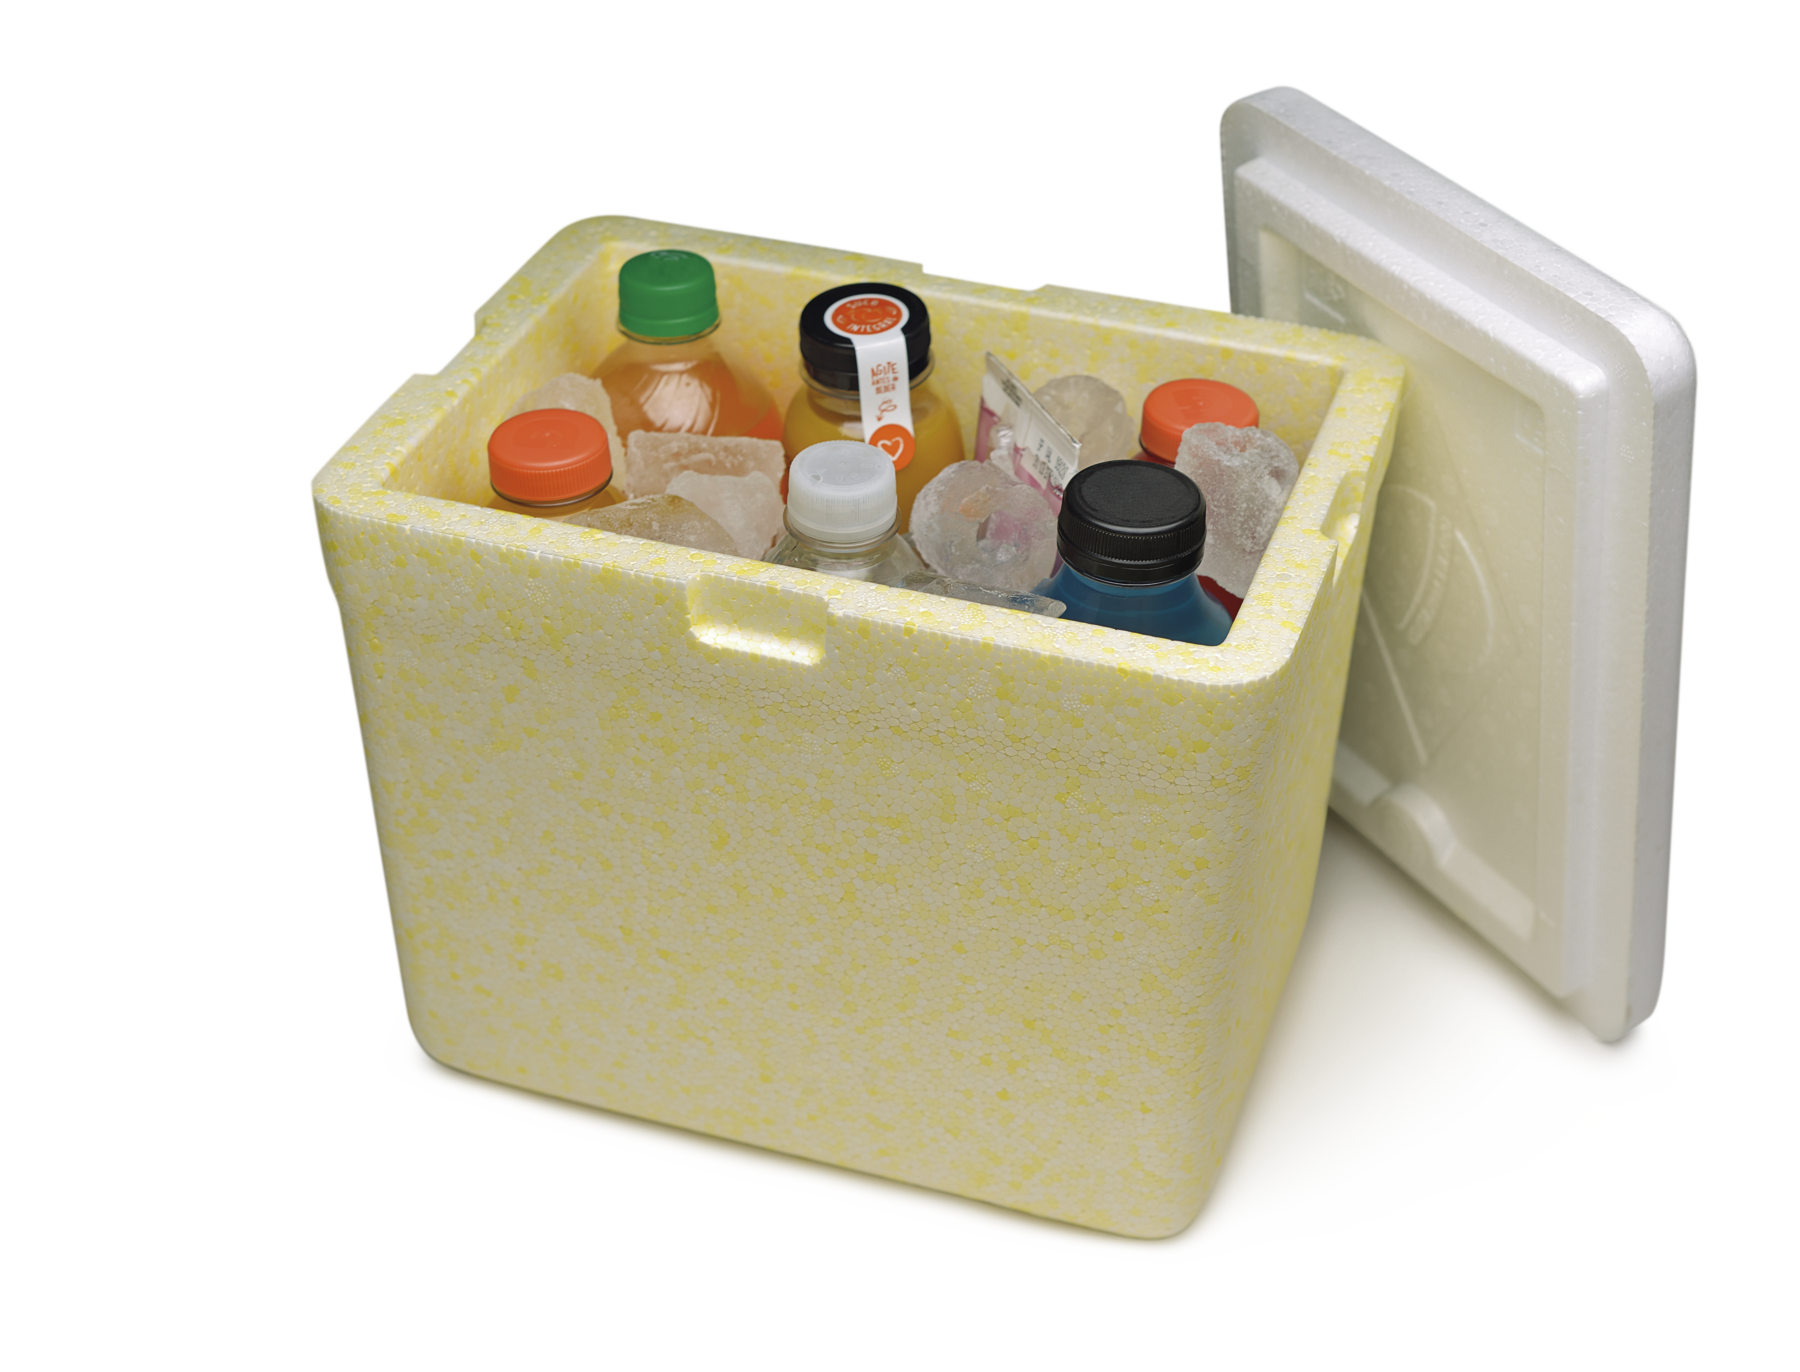 Fotografia. Uma caixa térmica de isopor aberta com a tampa no lado direito e com diversas garrafas de bebida e gelo dentro.